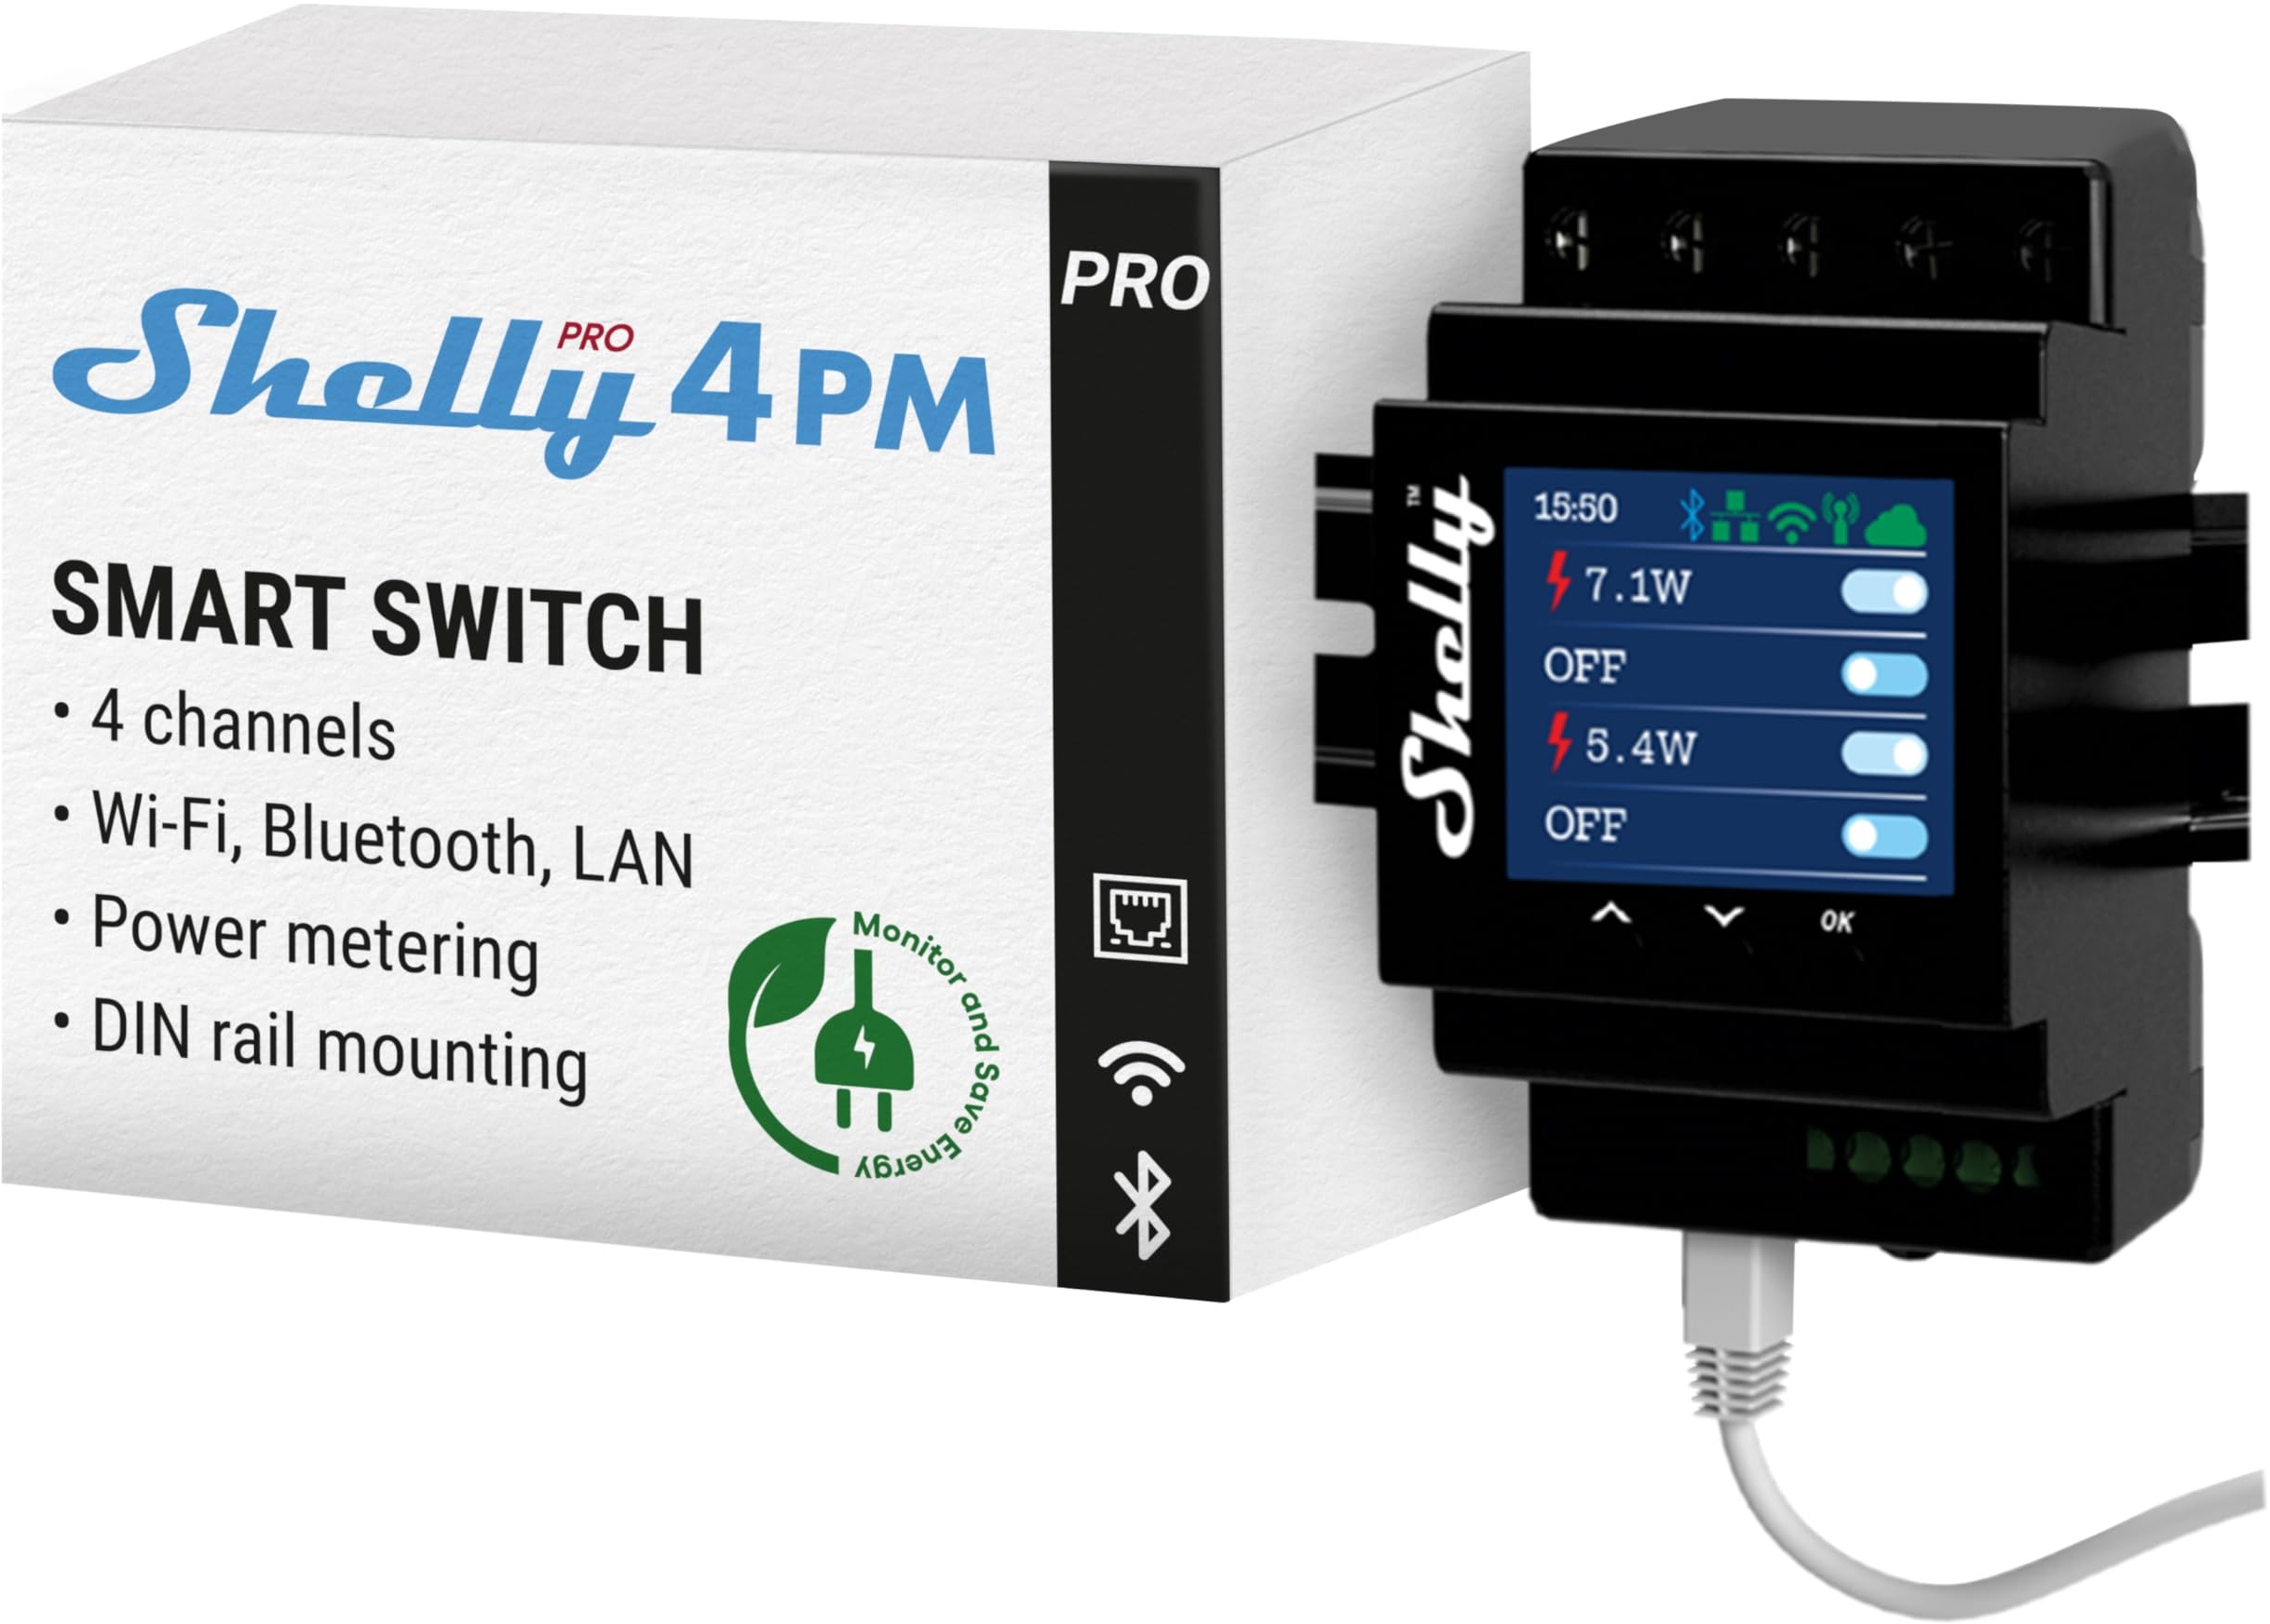 Shelly Pro 4PM | Wlan, LAN & Bluetooth 4 Kanäle Smart Relais mit Leistungsmessung | Hausautomation | Kompatibel mit Alexa & Google Home | iOS Android App| Fernsteuerung und Überwachung von Geräten